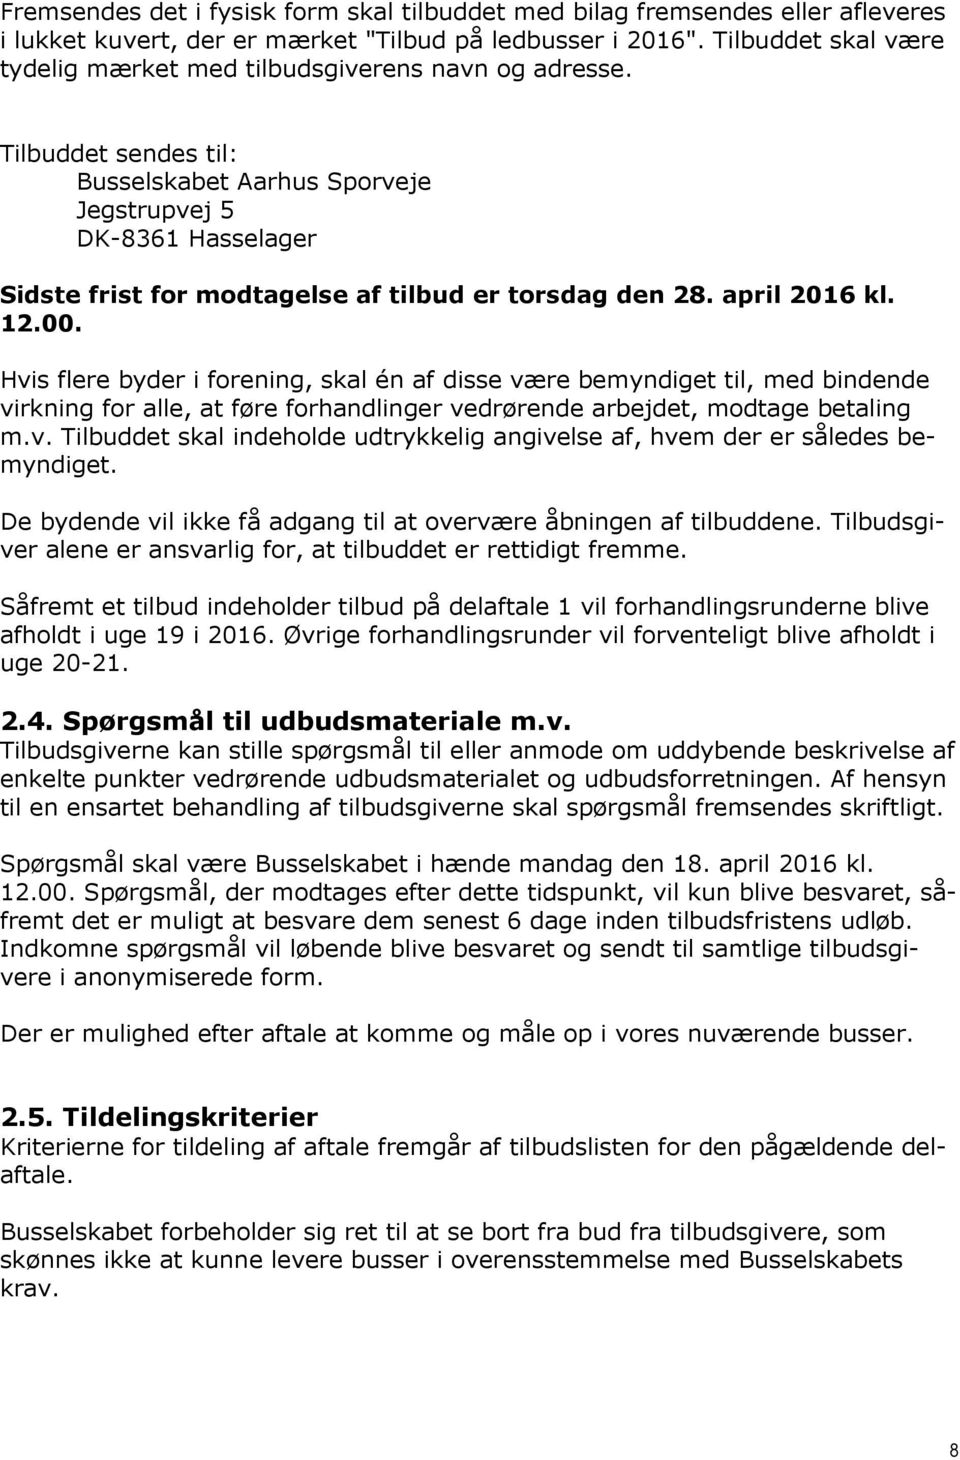 Tilbuddet sendes til: Busselskabet Aarhus Sporveje Jegstrupvej 5 DK-8361 Hasselager Sidste frist for modtagelse af tilbud er torsdag den 28. april 2016 kl. 12.00.